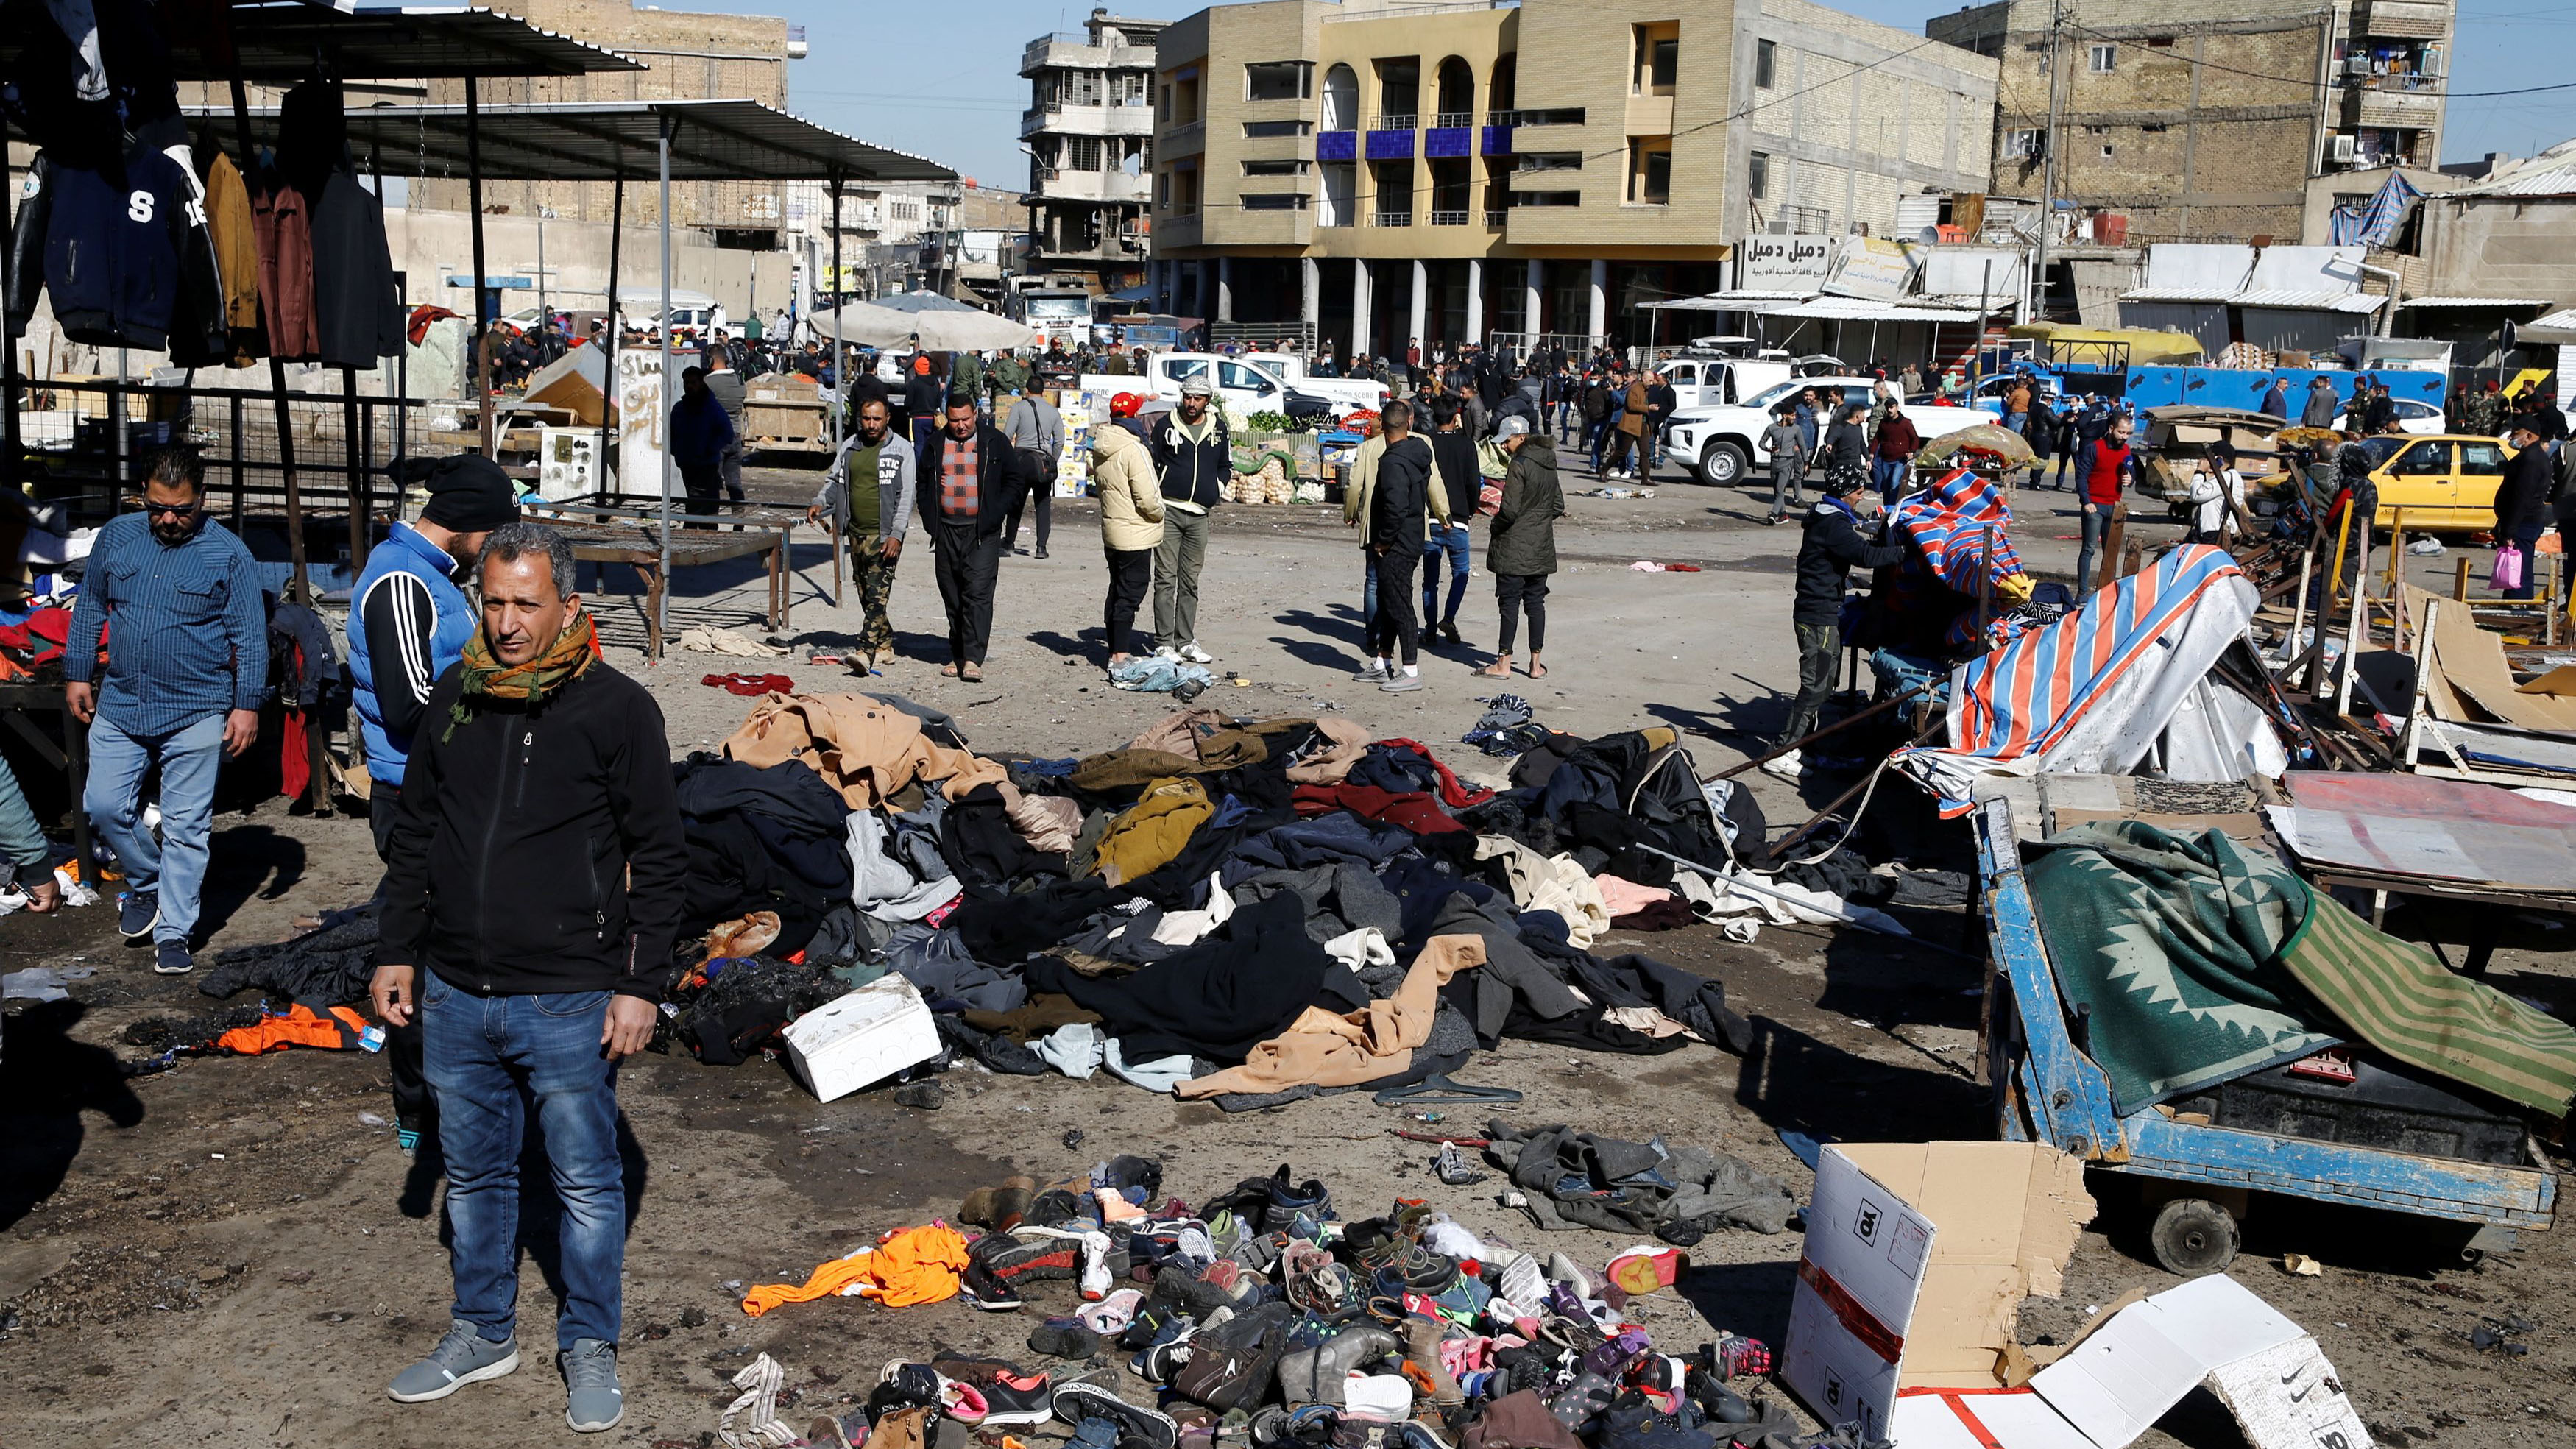 Grupi i Shtetit Islamik merr përgjegjësinë për sulmin me bomba vdekjeprurëse në Bagdad